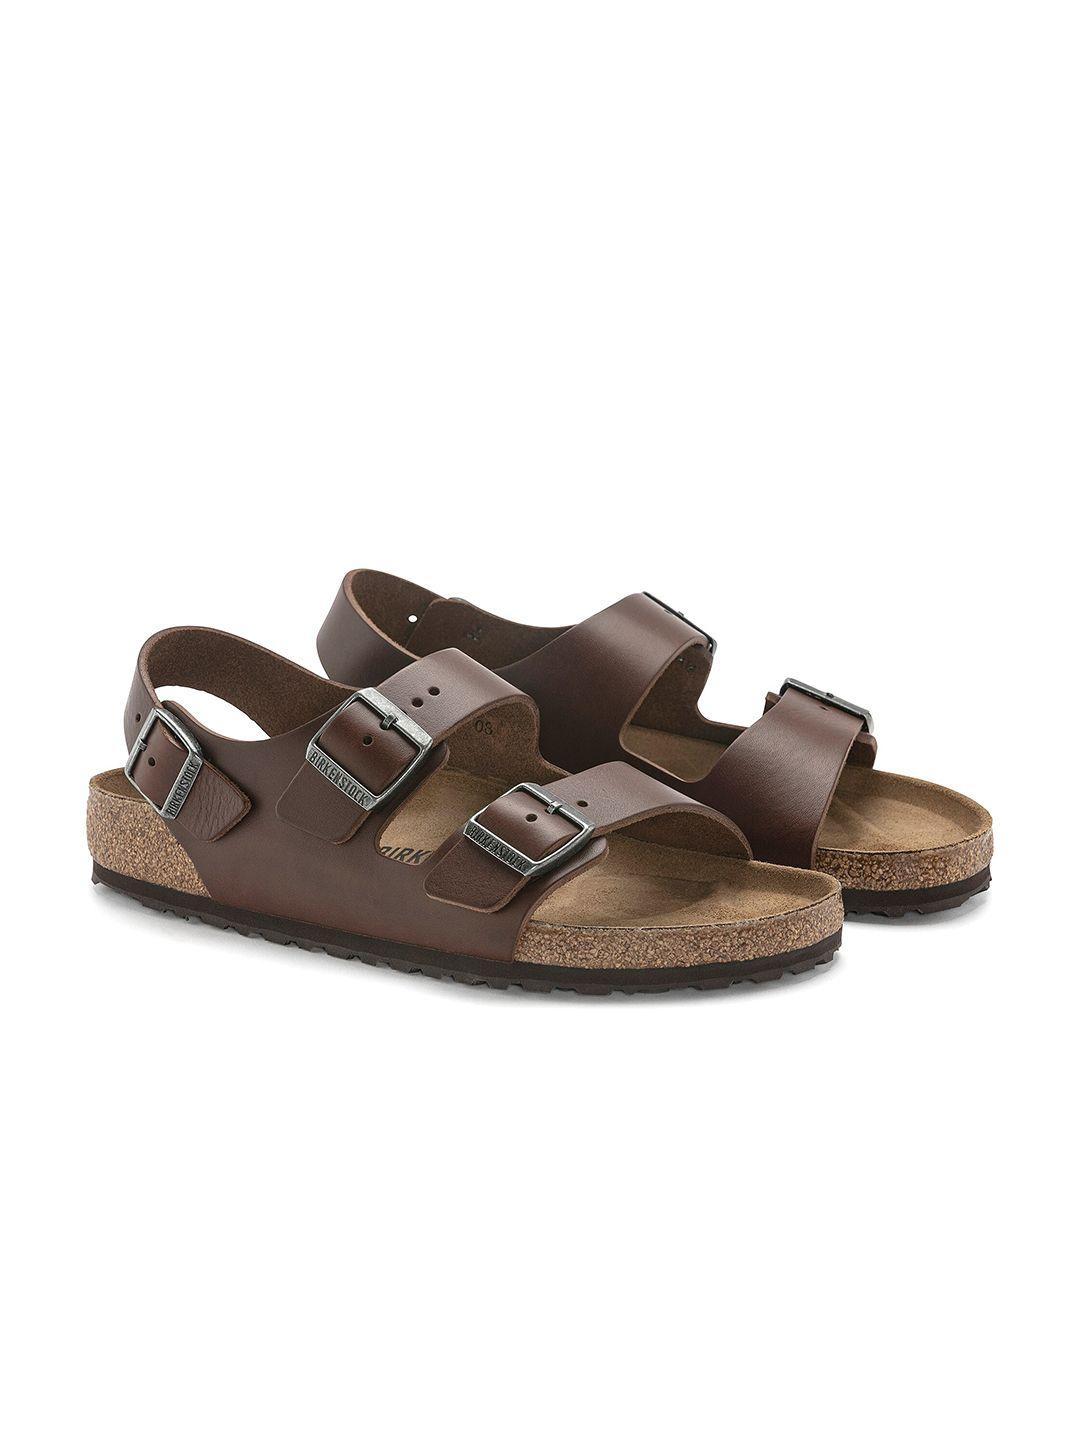 birkenstock men milano bs regular width comfort sandals